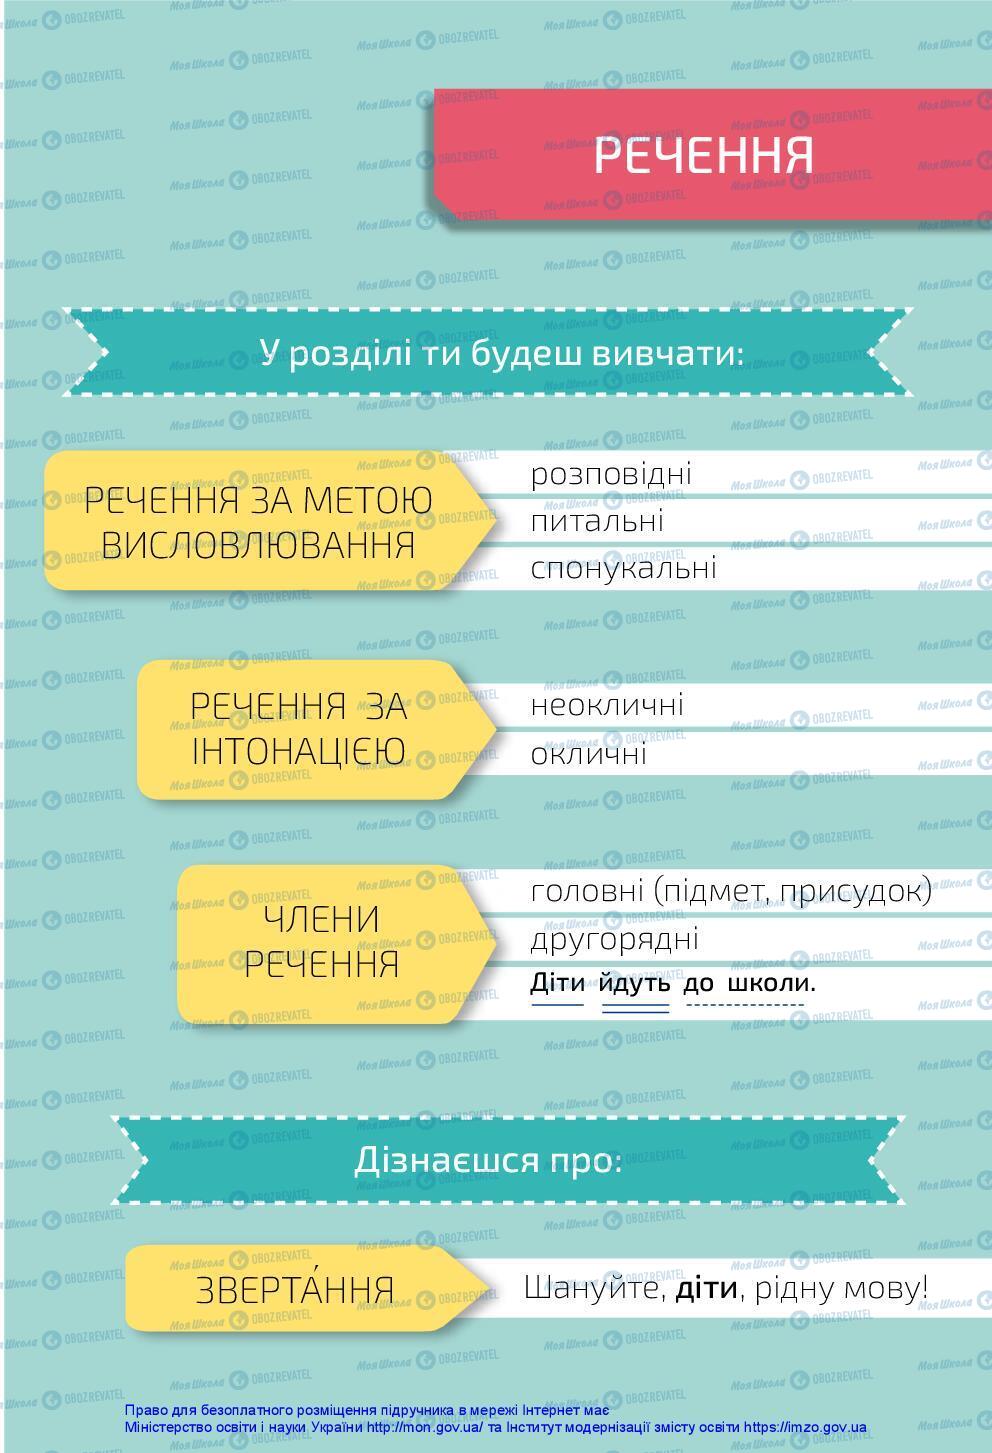 Підручники Українська мова 3 клас сторінка 31